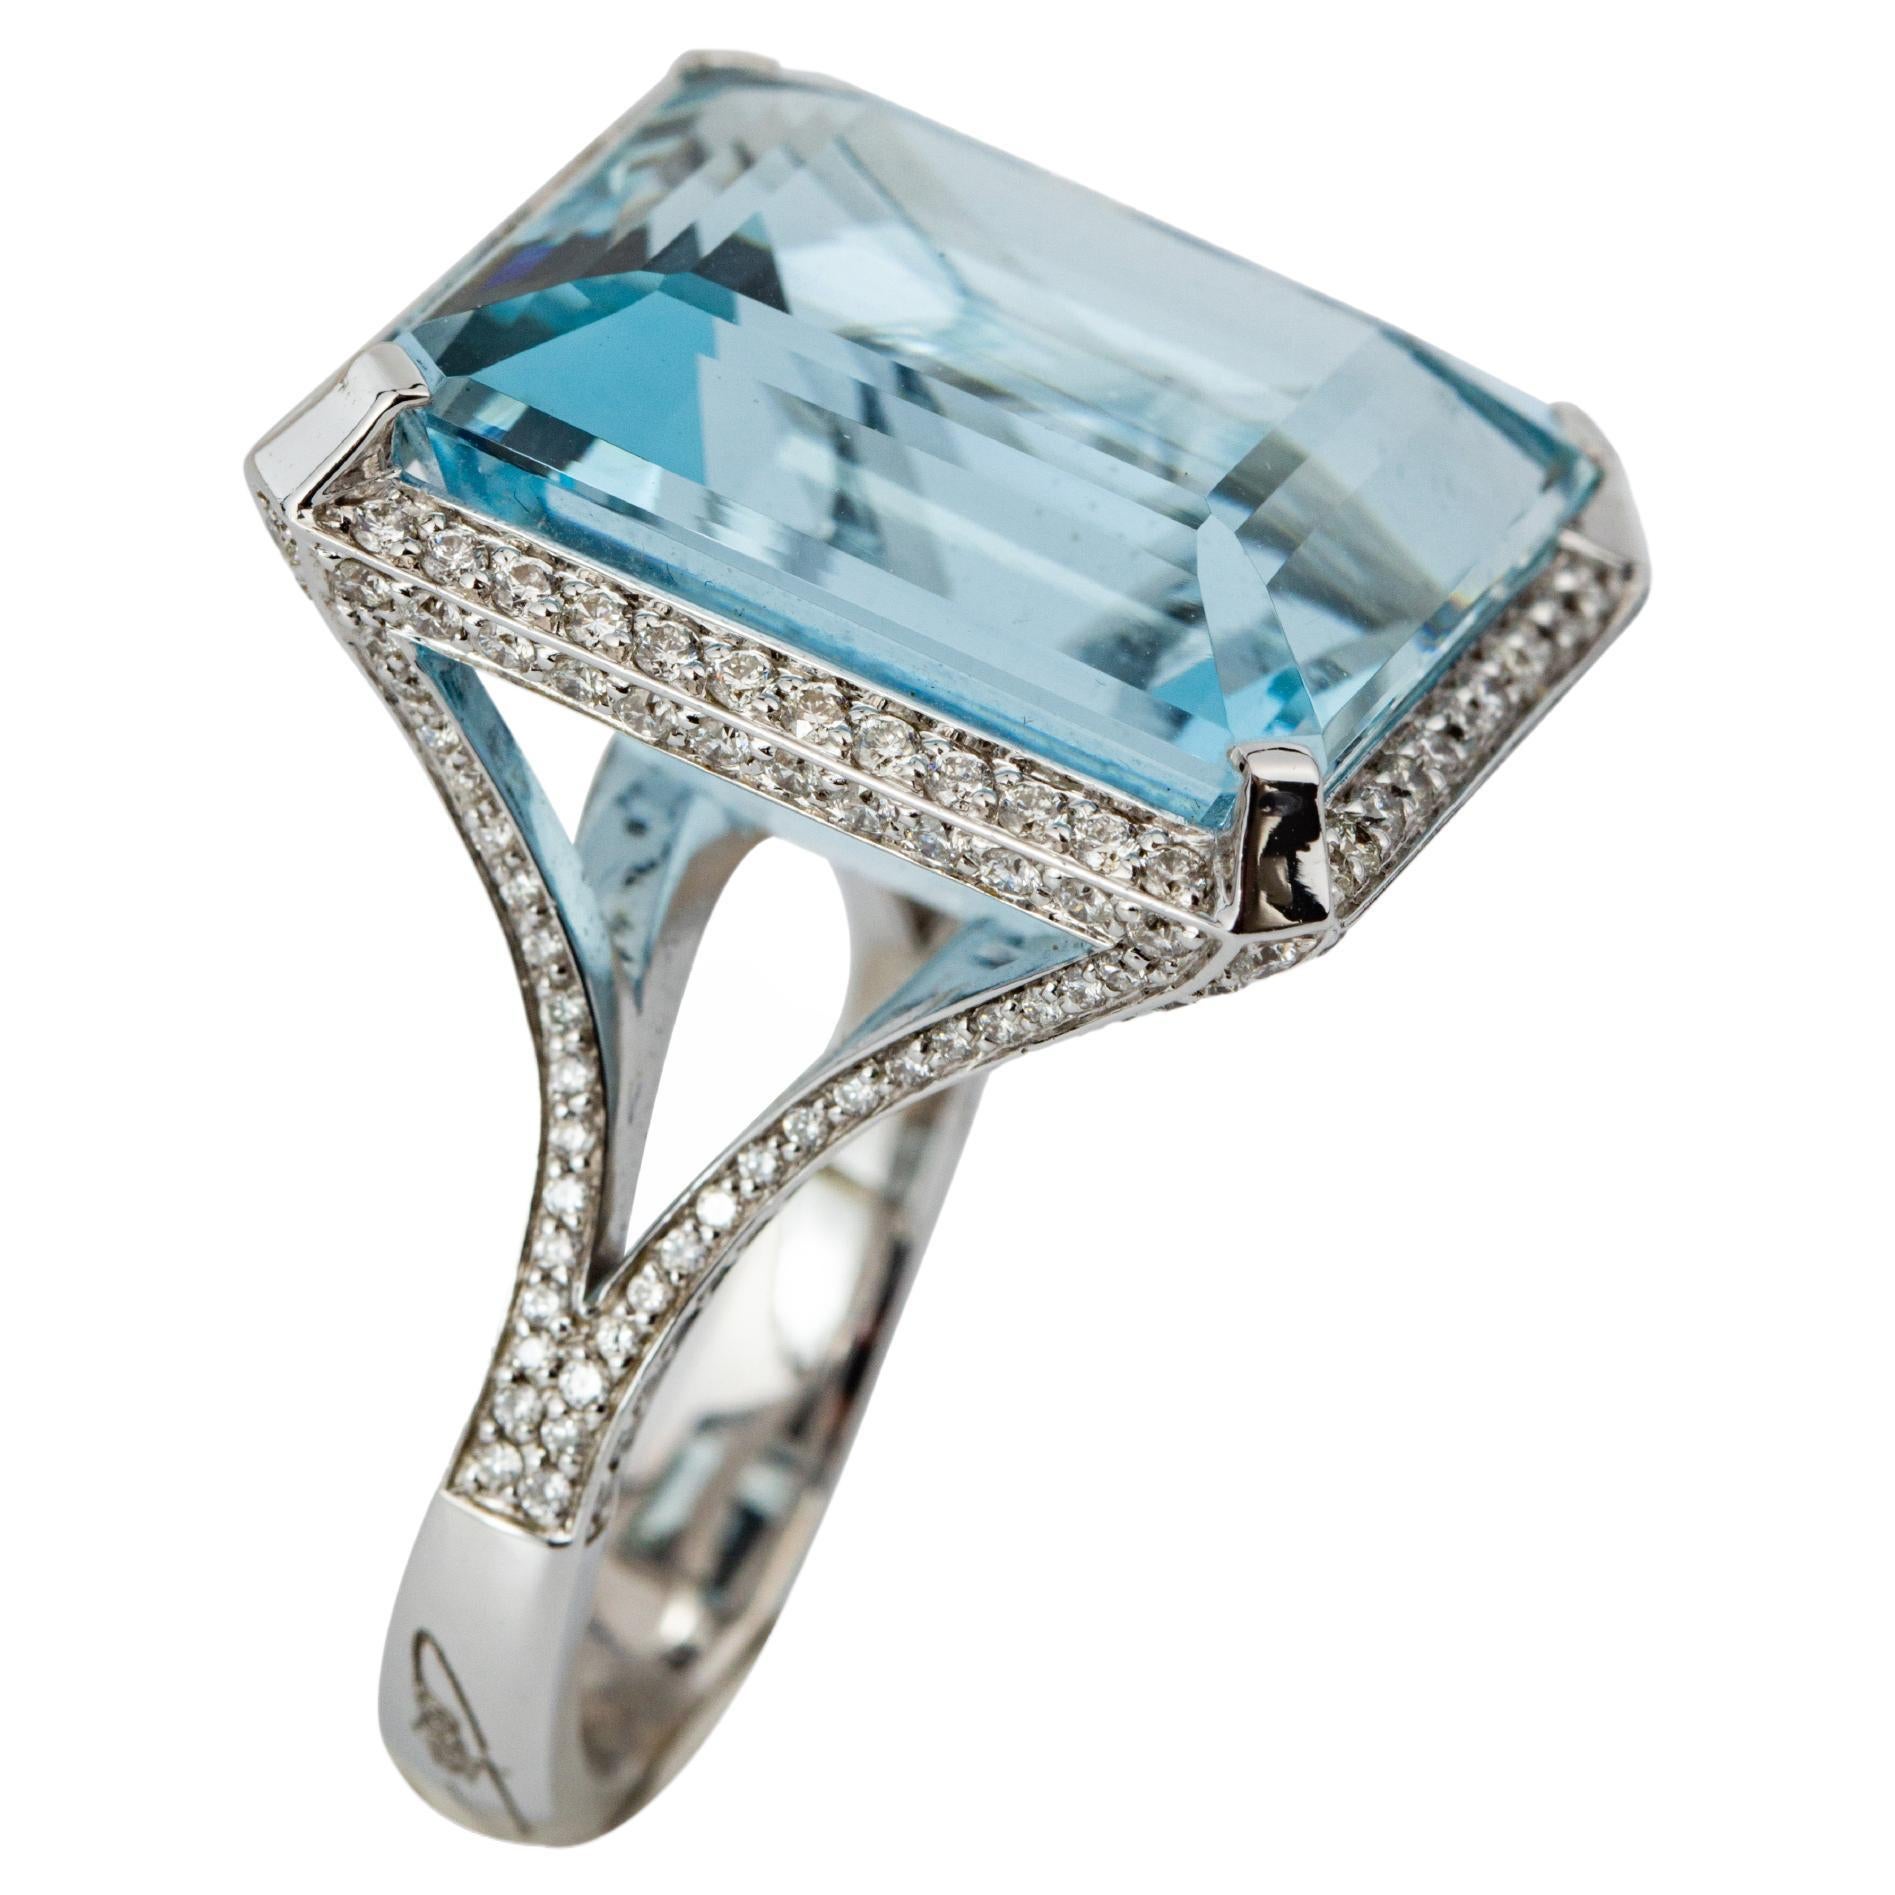 "Costis" Aquamarine Ring with 29.42 carats Aquamarine and Diamonds